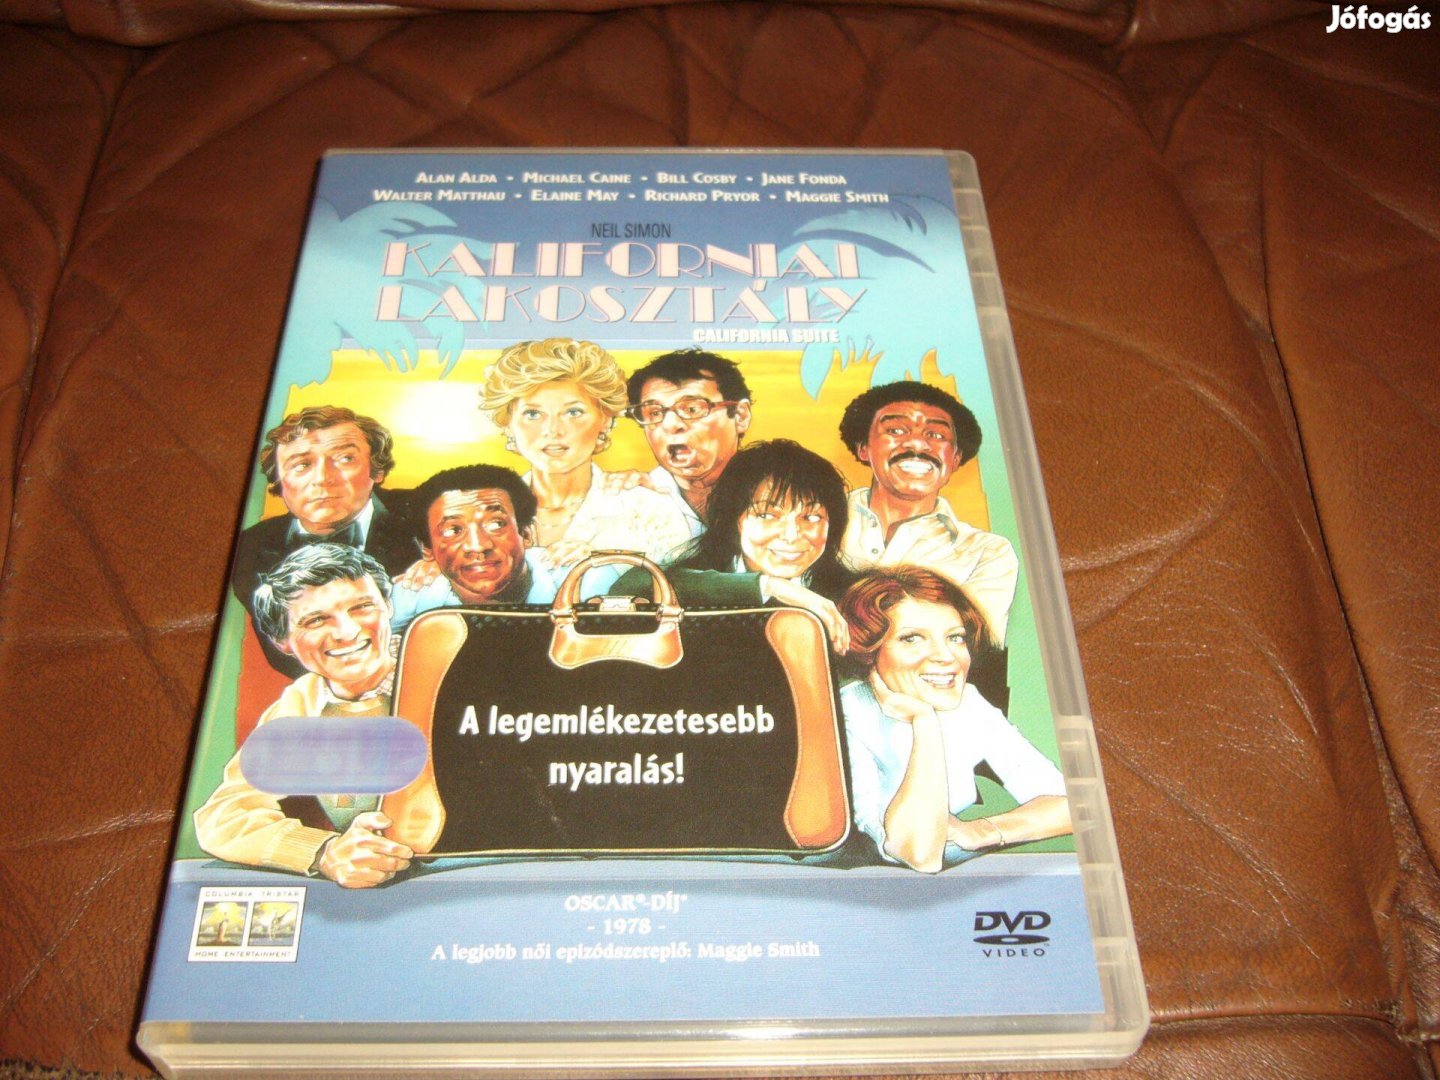 Kaliforniai lakosztály. dvd film . Cserélhető Blu-ray filmre